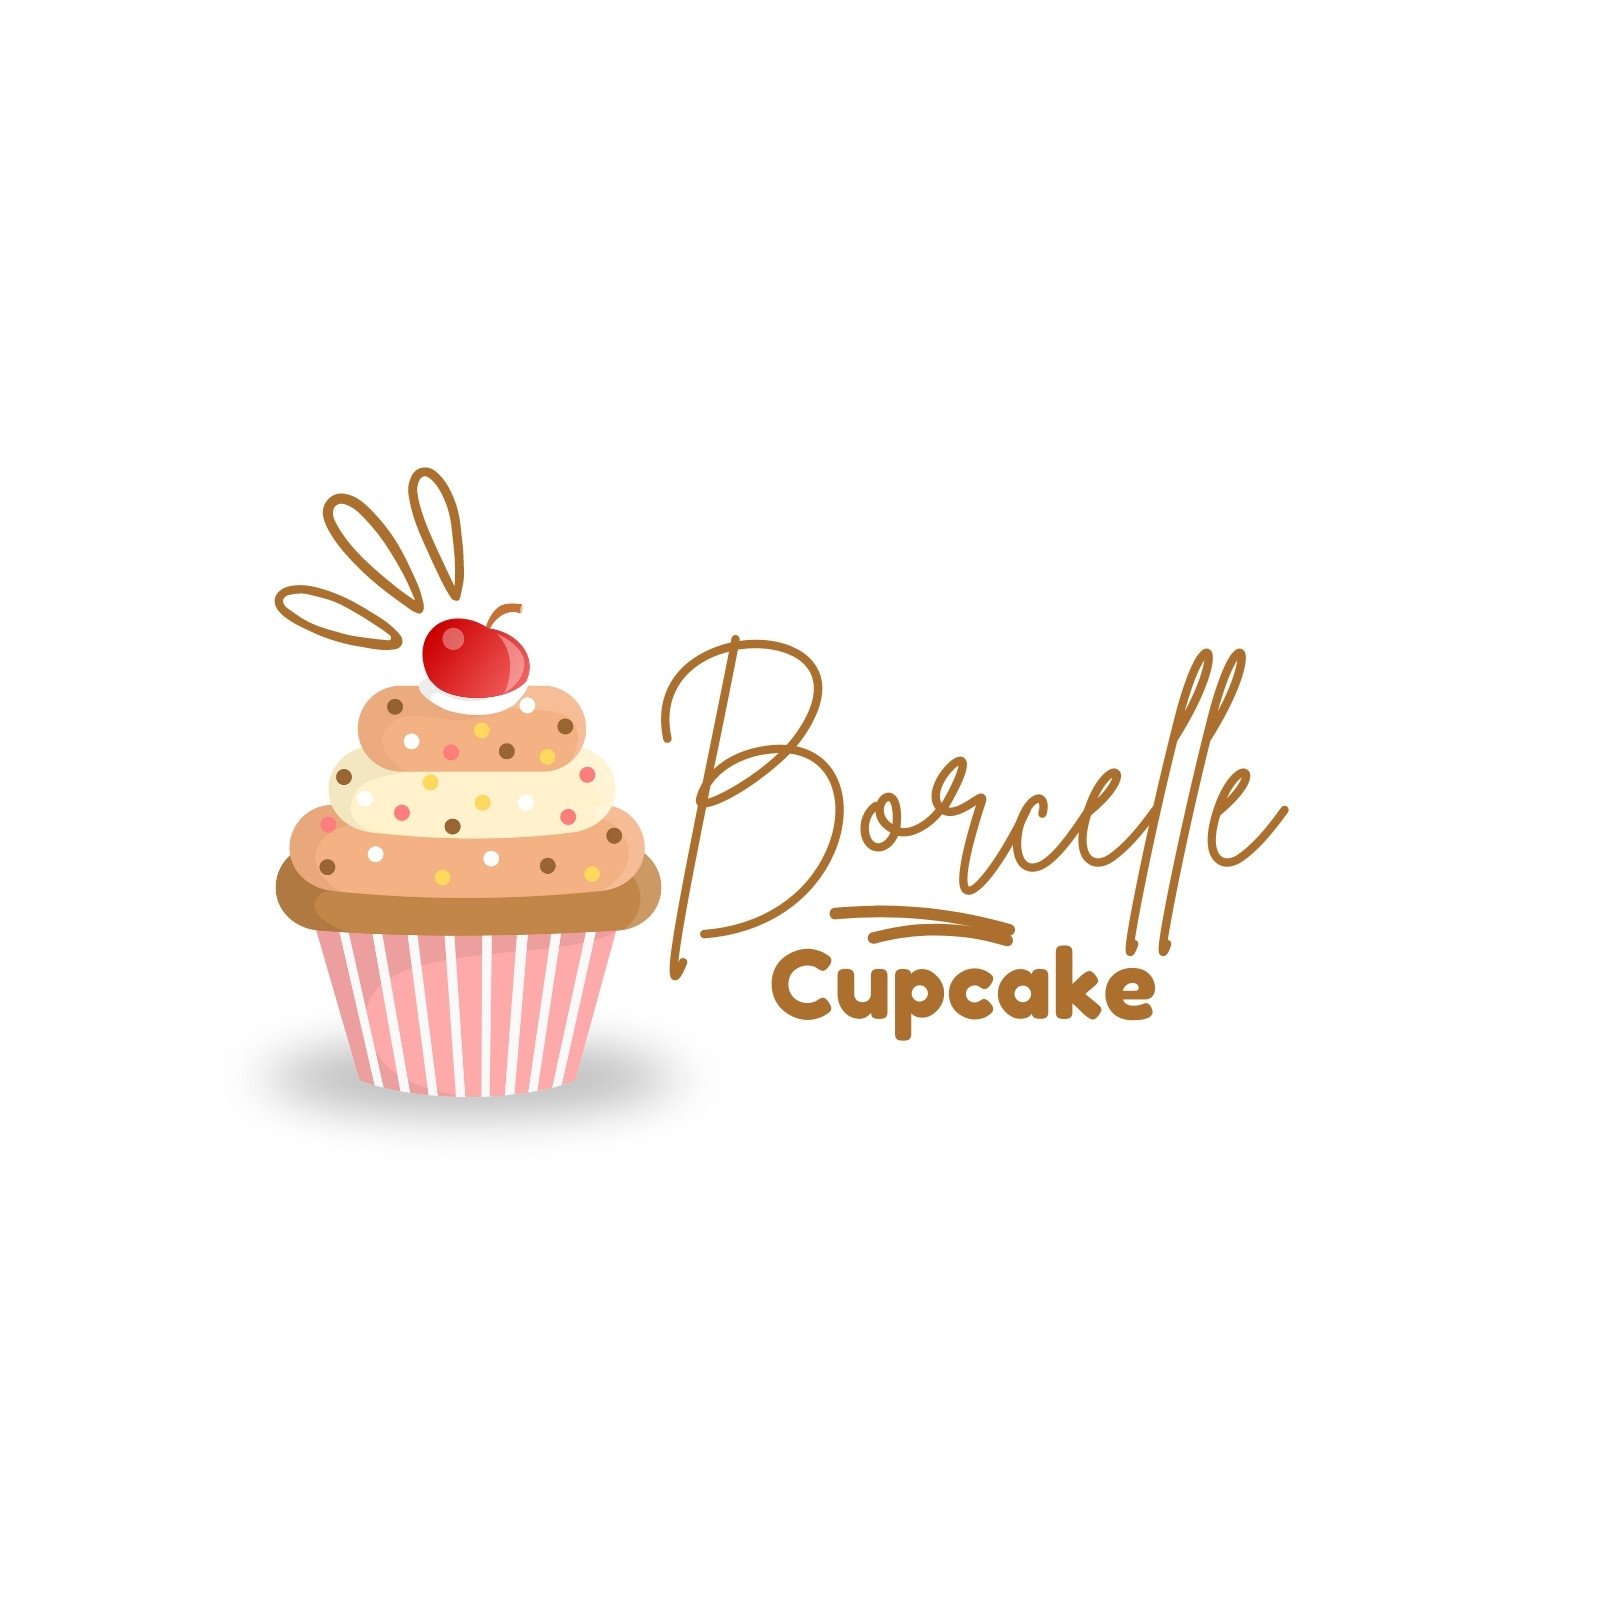 Customize 164+ Cupcake Logo Templates Online - Canva